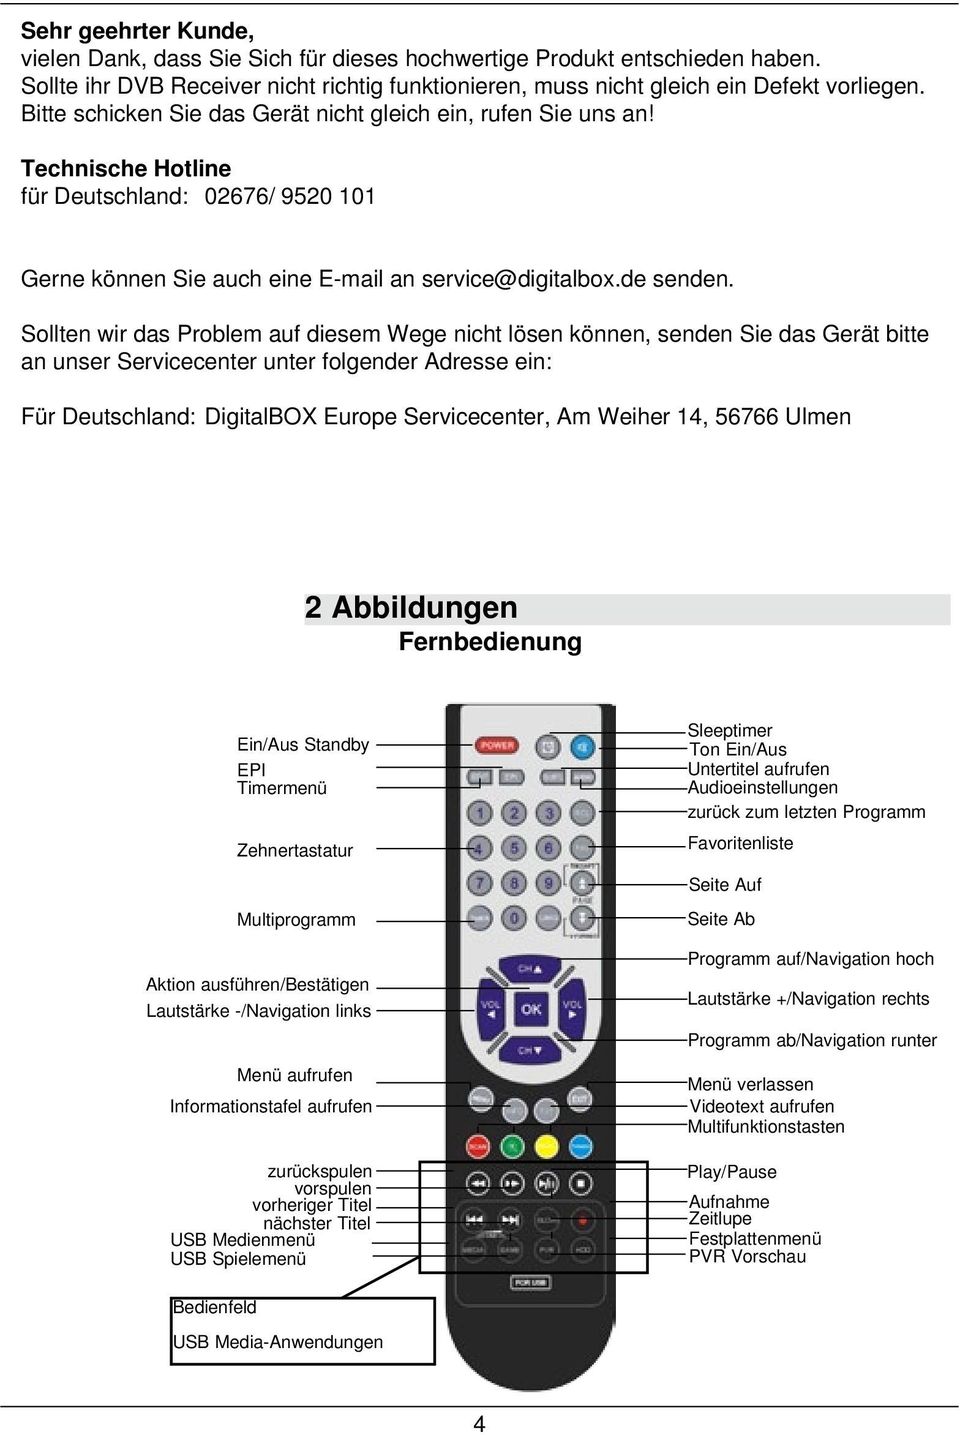 Sollten wir das Problem auf diesem Wege nicht lösen können, senden Sie das Gerät bitte an unser Servicecenter unter folgender Adresse ein: Für Deutschland: DigitalBOX Europe Servicecenter, Am Weiher